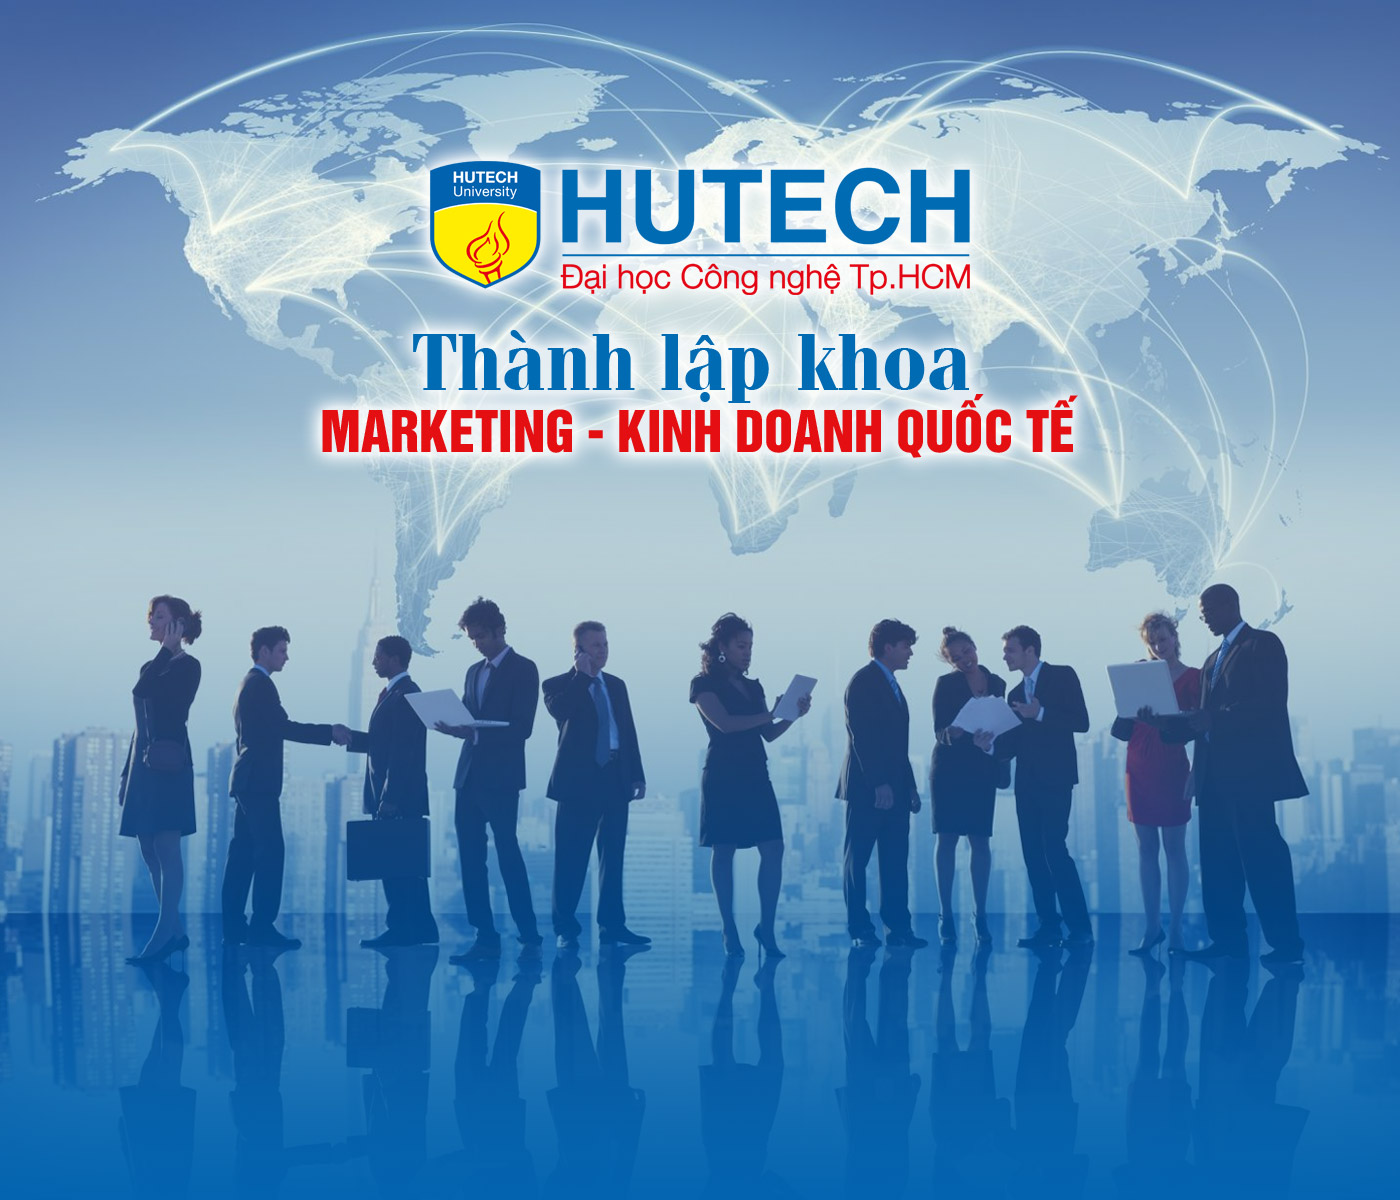 HUTECH thành lập khoa Marketing - Kinh doanh quốc tế - Ảnh 1